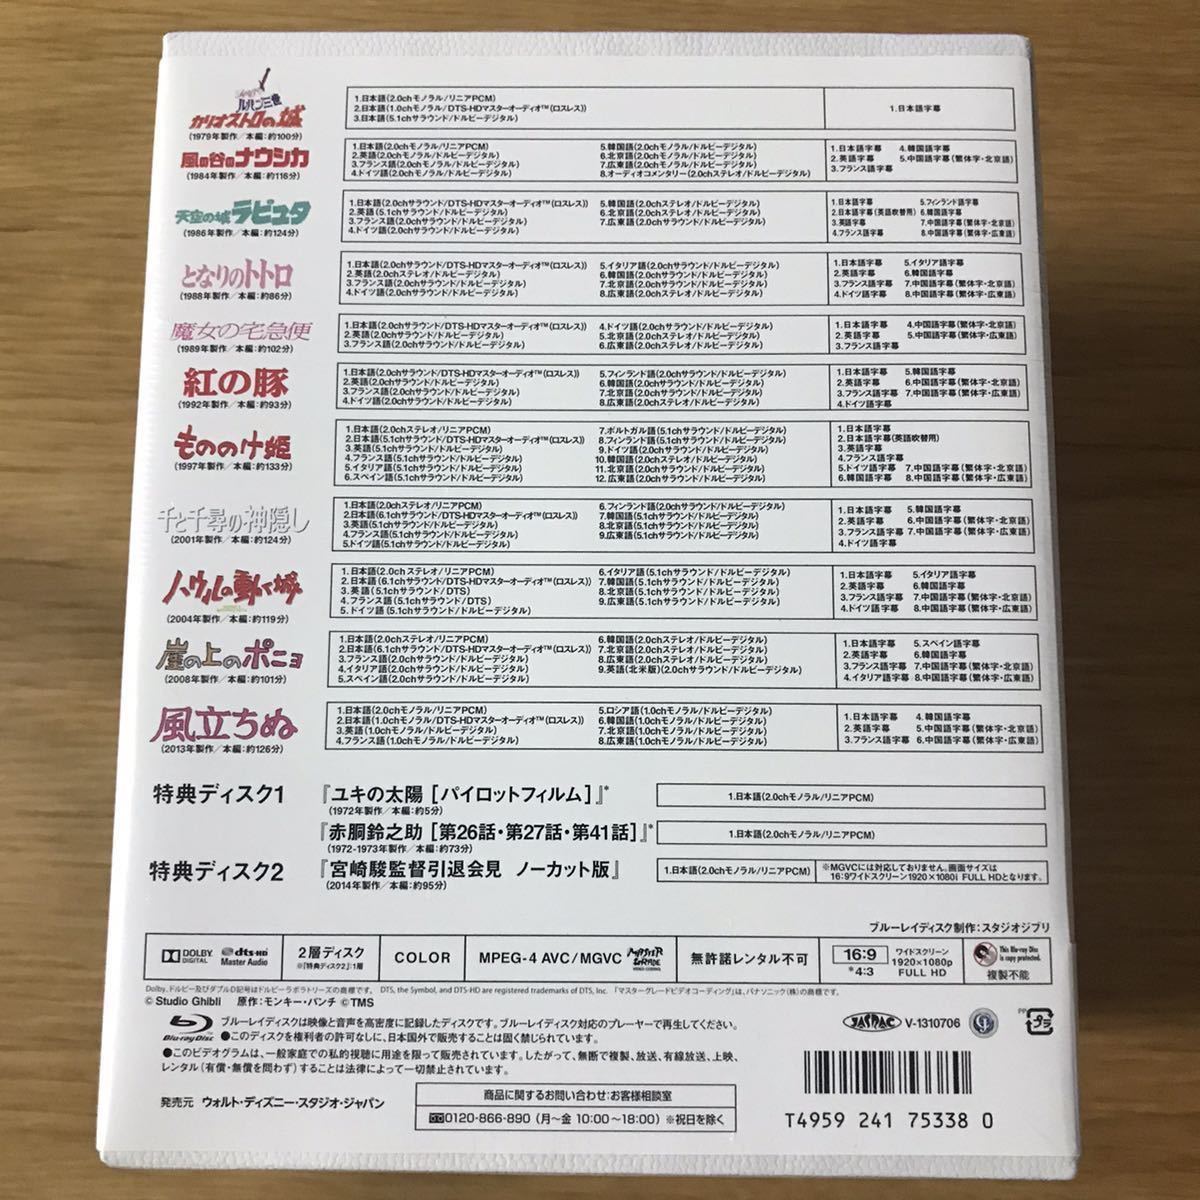 新品☆宮崎駿監督作品集 13枚組 blu-ray BOX ブルーレイ カリオストロ